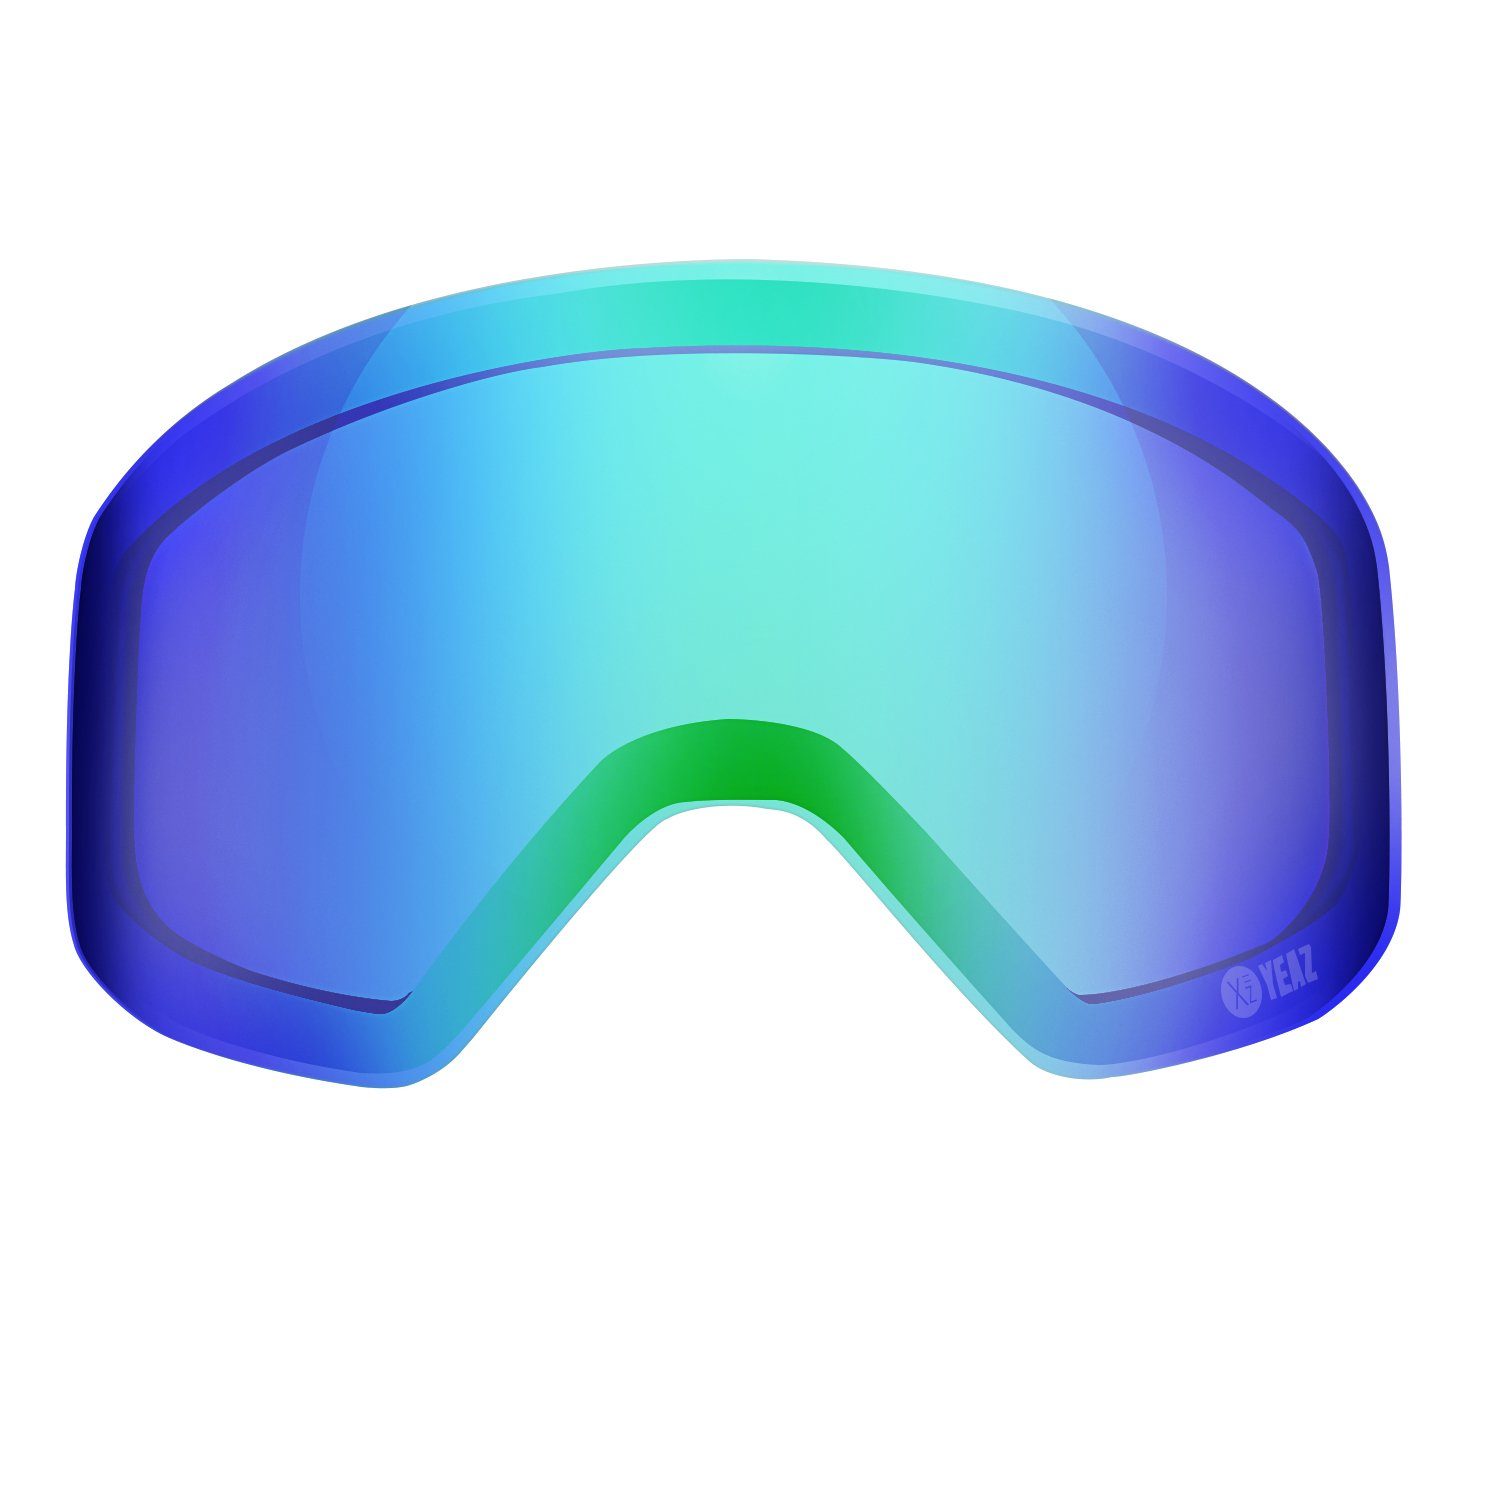 YEAZ Magnetisches APEX verspiegelt wechselglas, Wechselglas Skibrille grün magnetisches